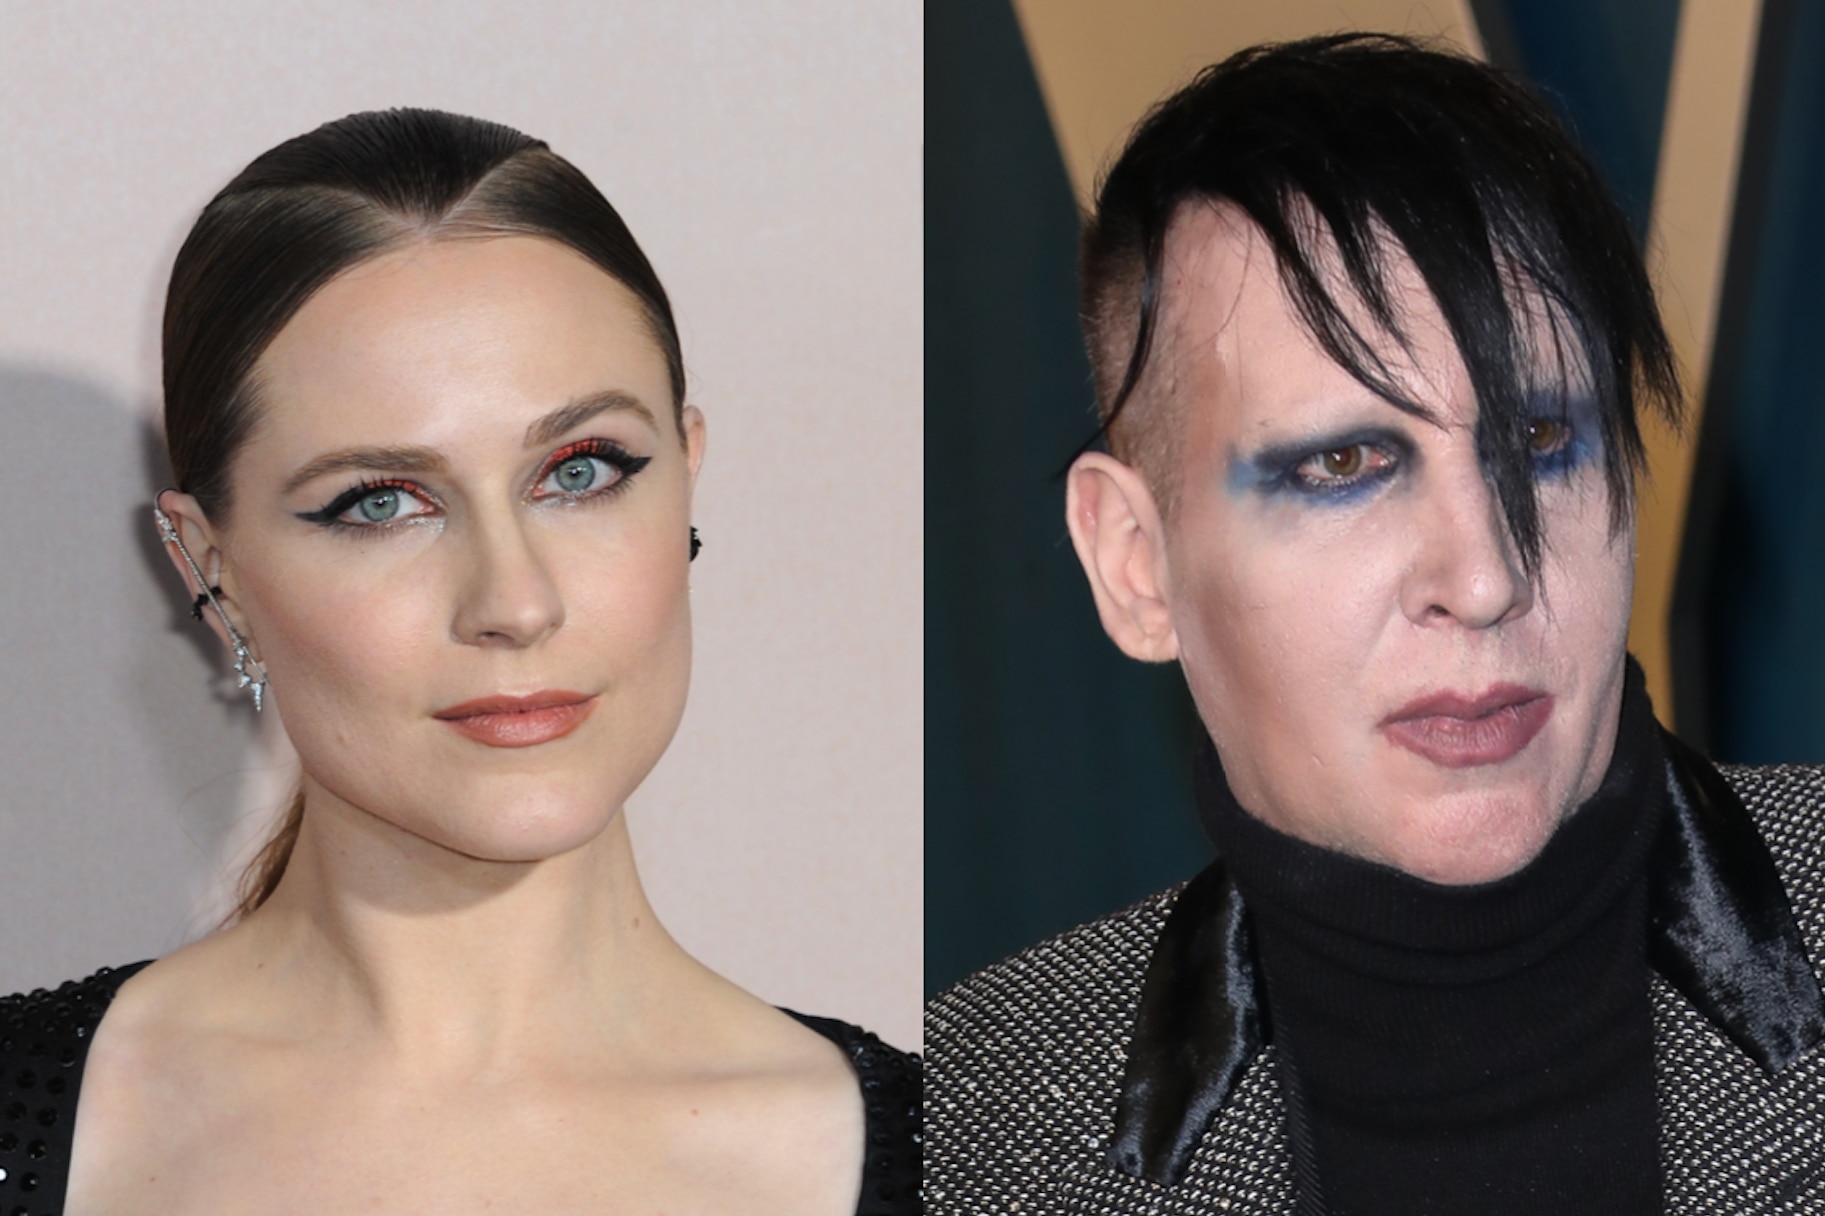 Evan Rachel Wood and Marilyn Manson